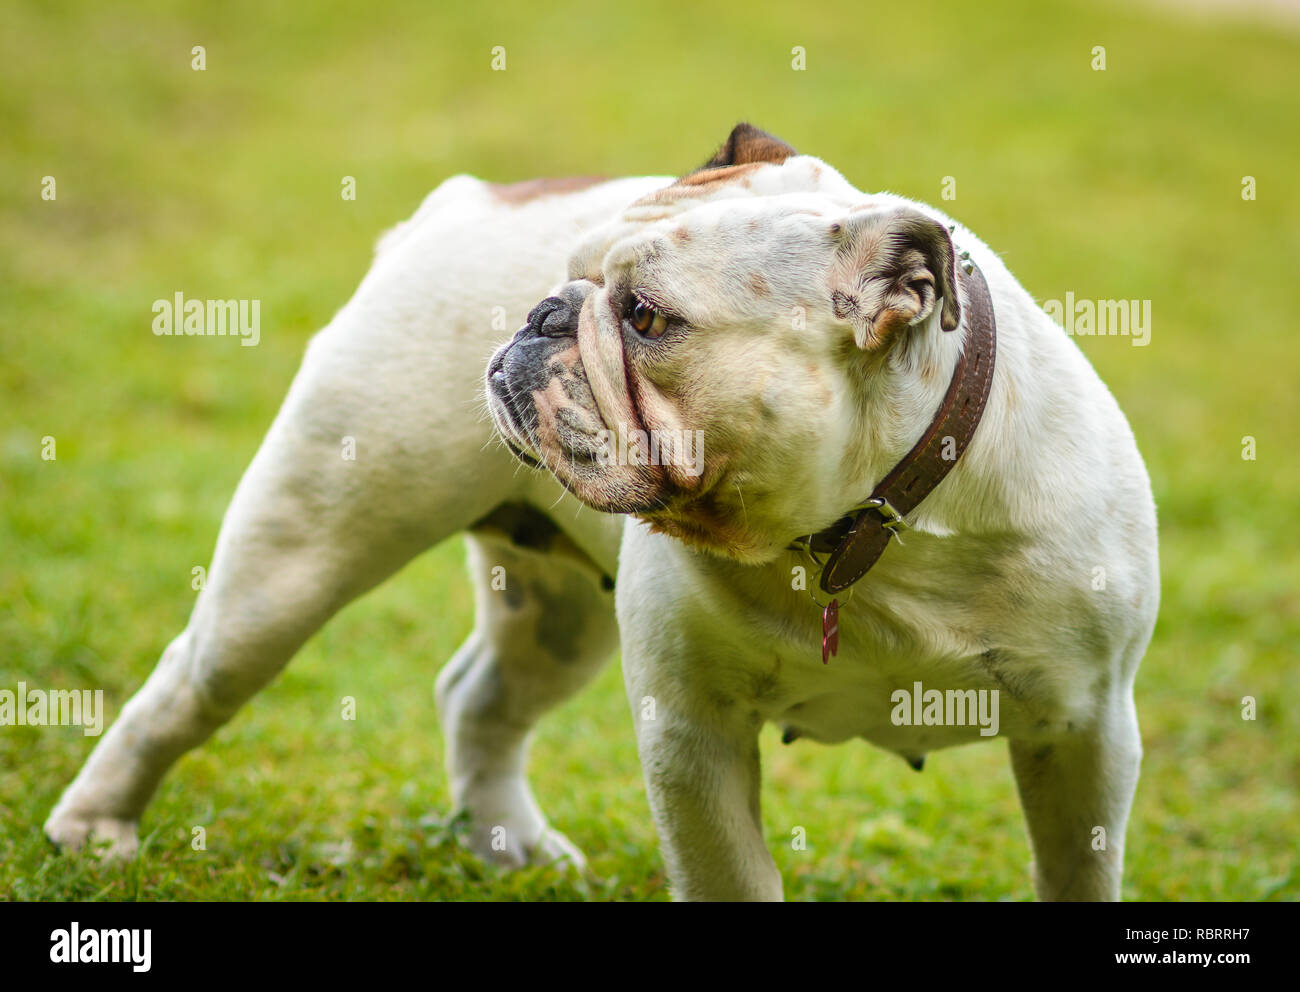 Eine braune und weiße Englische Bulldogge, die auf dem Rasen, verspielt und fröhlich. Die Bulldog ist ein muskulöser, schwerer Hund mit einem Zerknitterten Gesicht und eine di Stockfoto